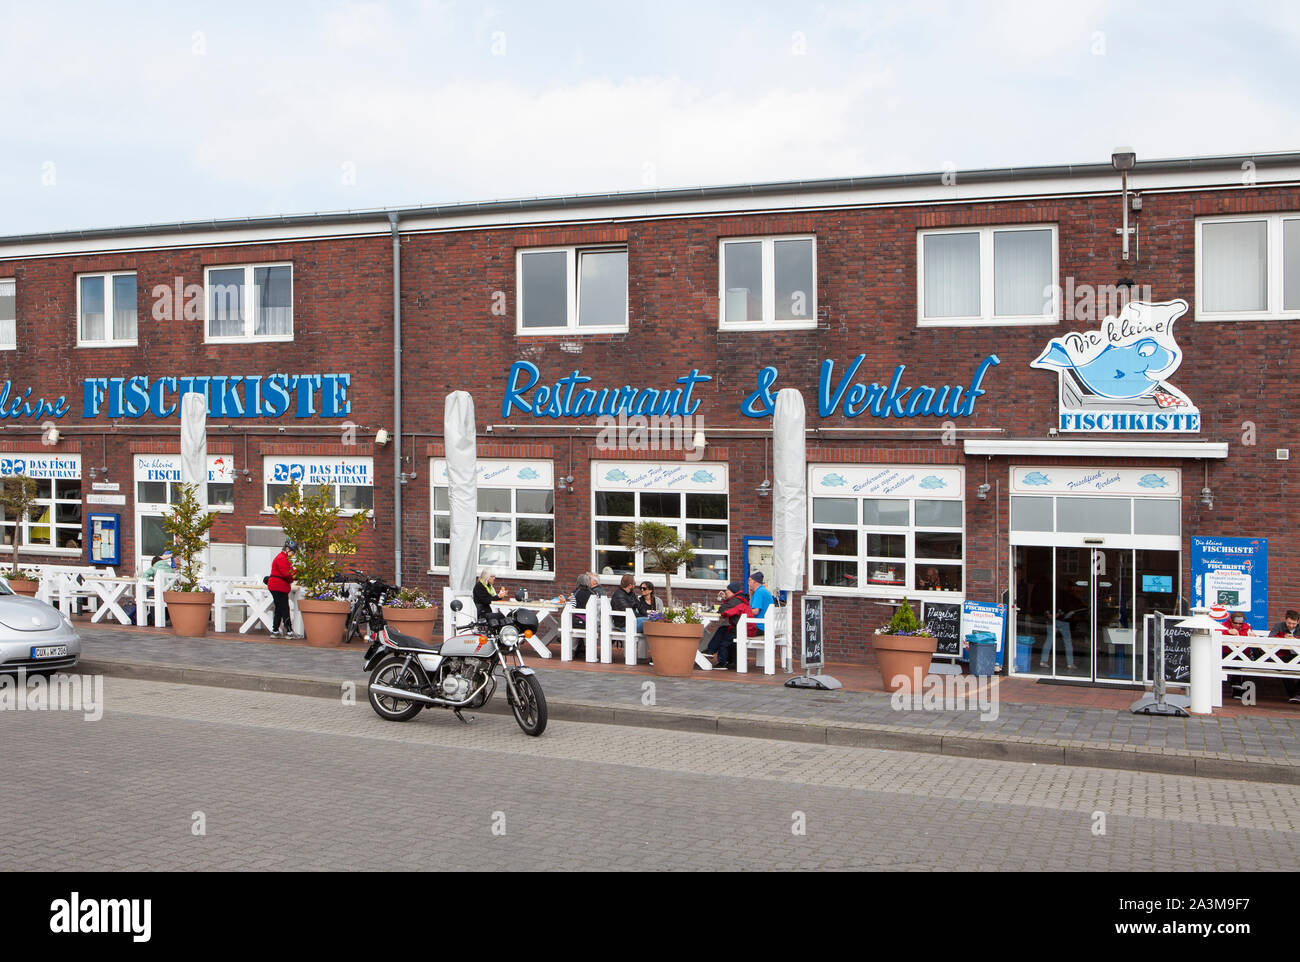 Restaurants de poisson sur le vieux port, Cuxhaven, Basse-Saxe, Allemagne, Europe Banque D'Images